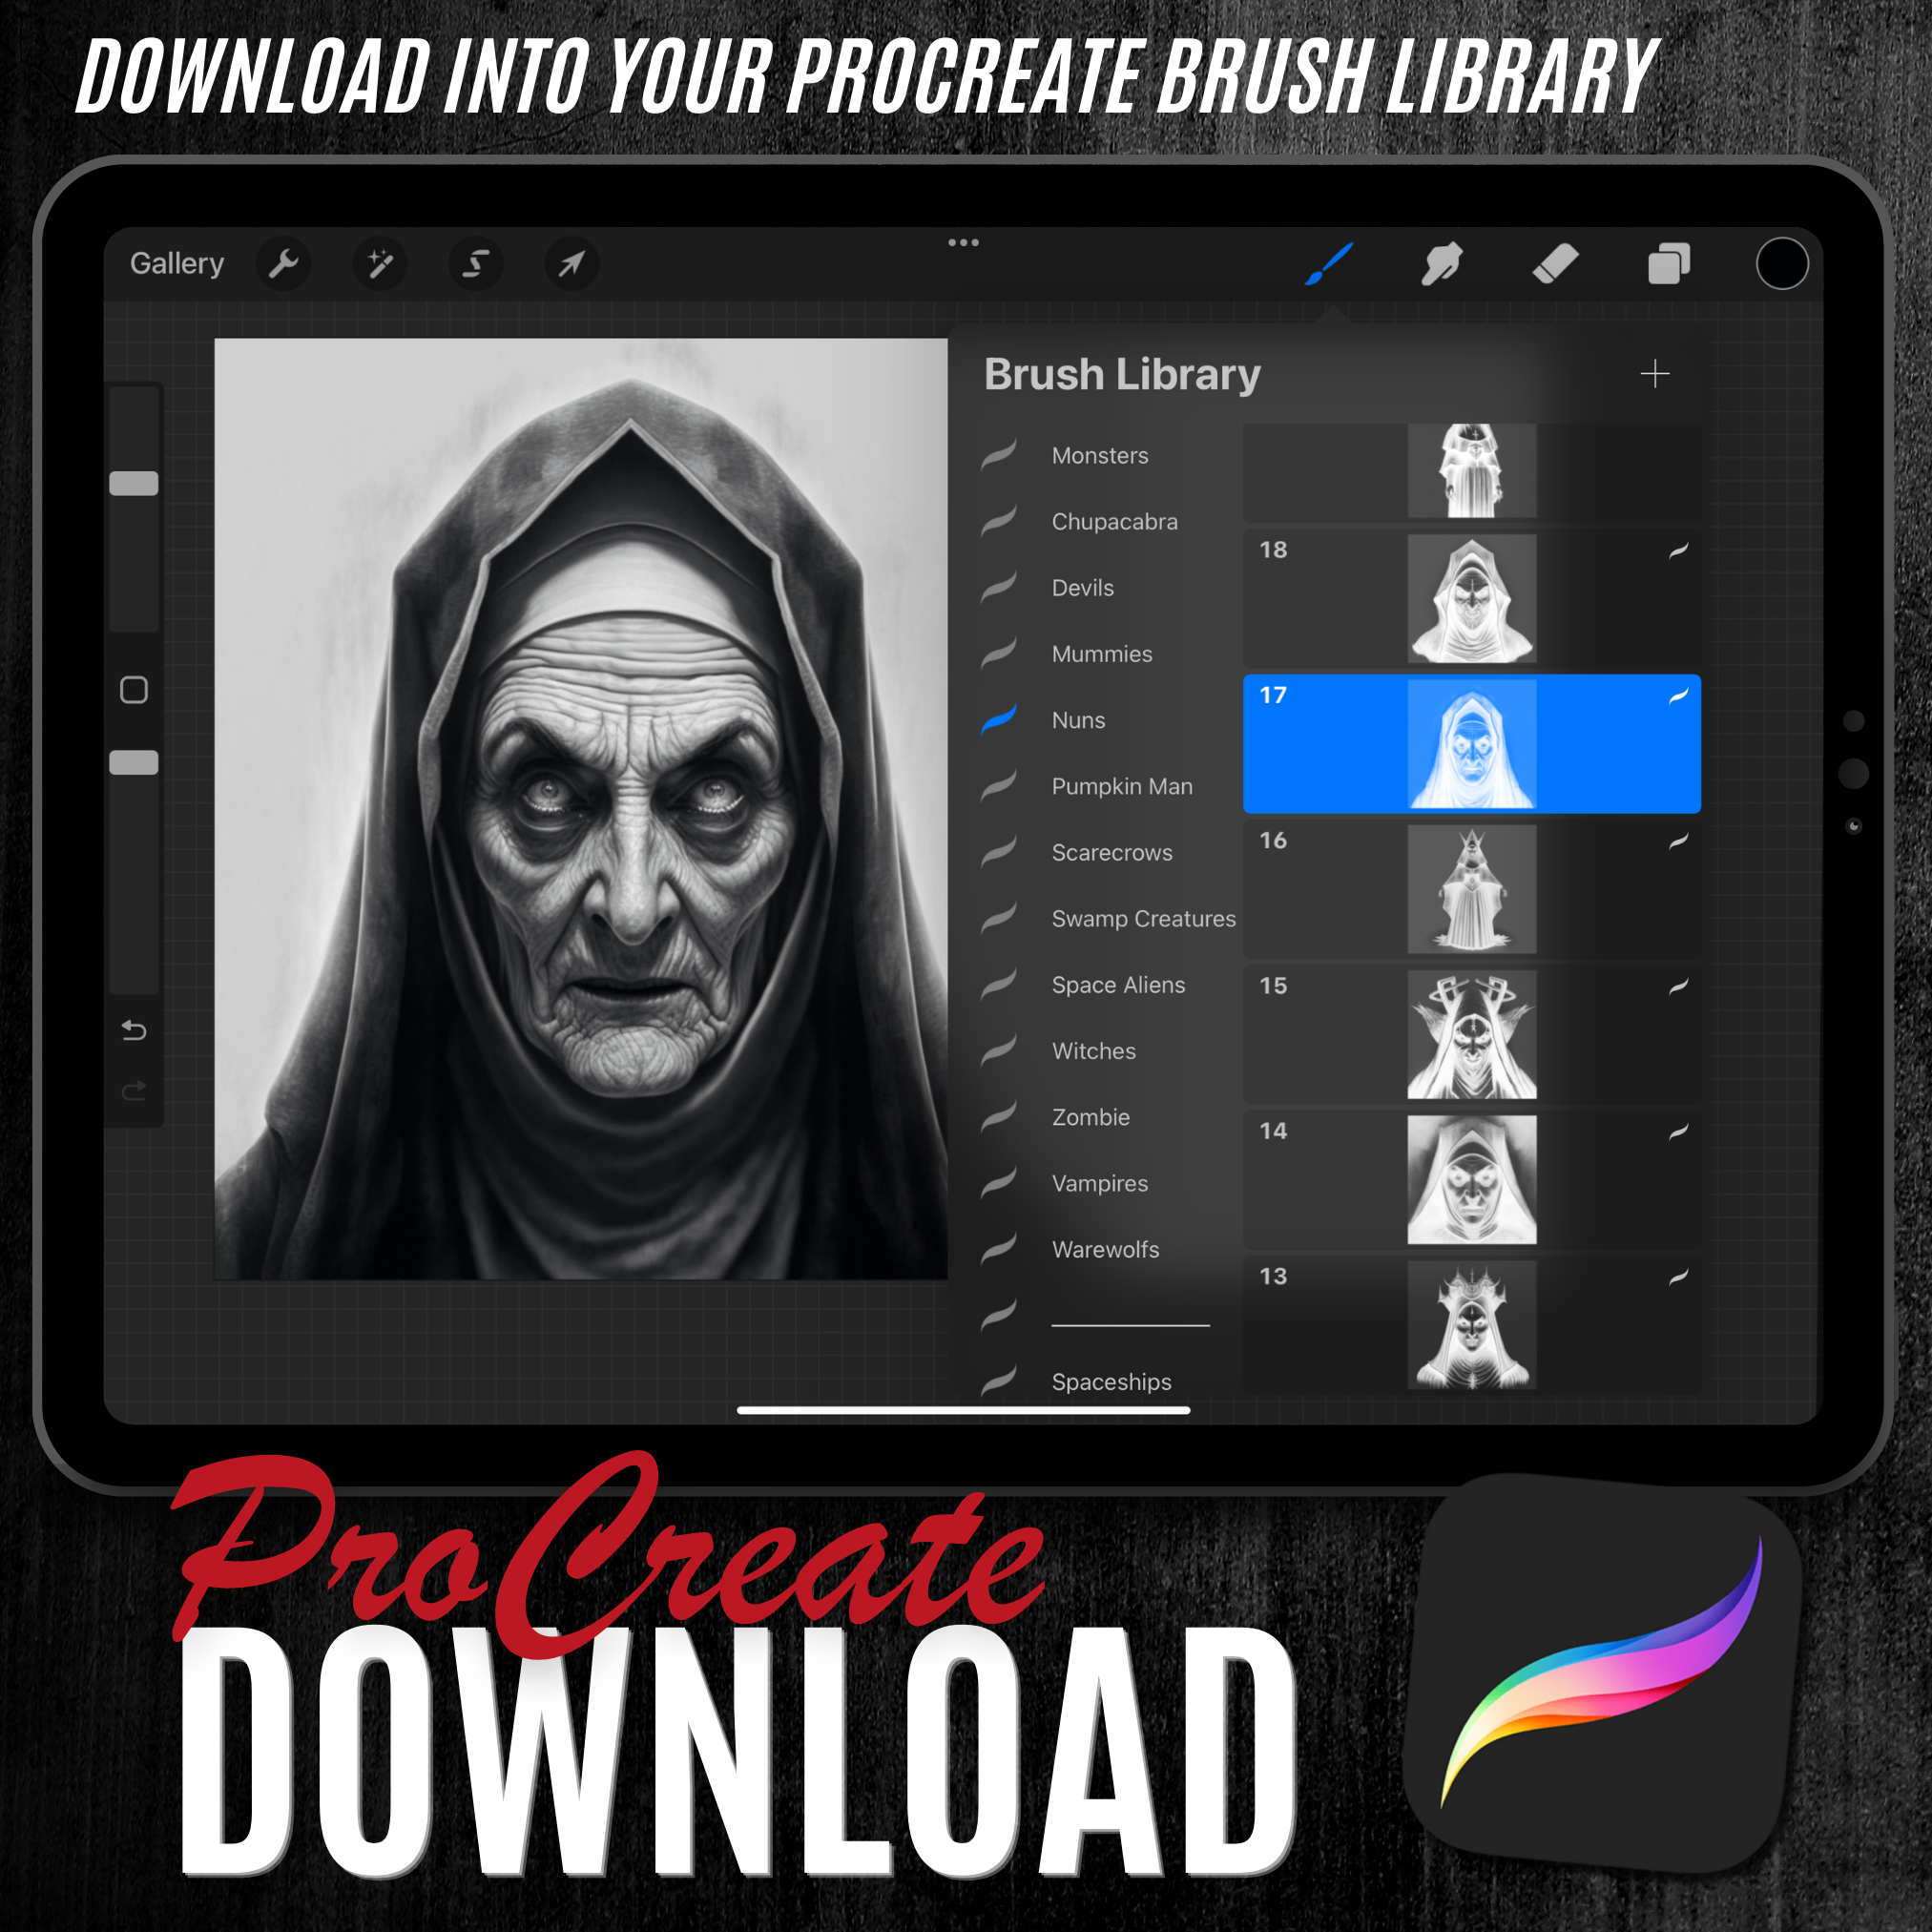 Nuns Digital Horror Design Collection: 50 Procreate & Sketchbook Images